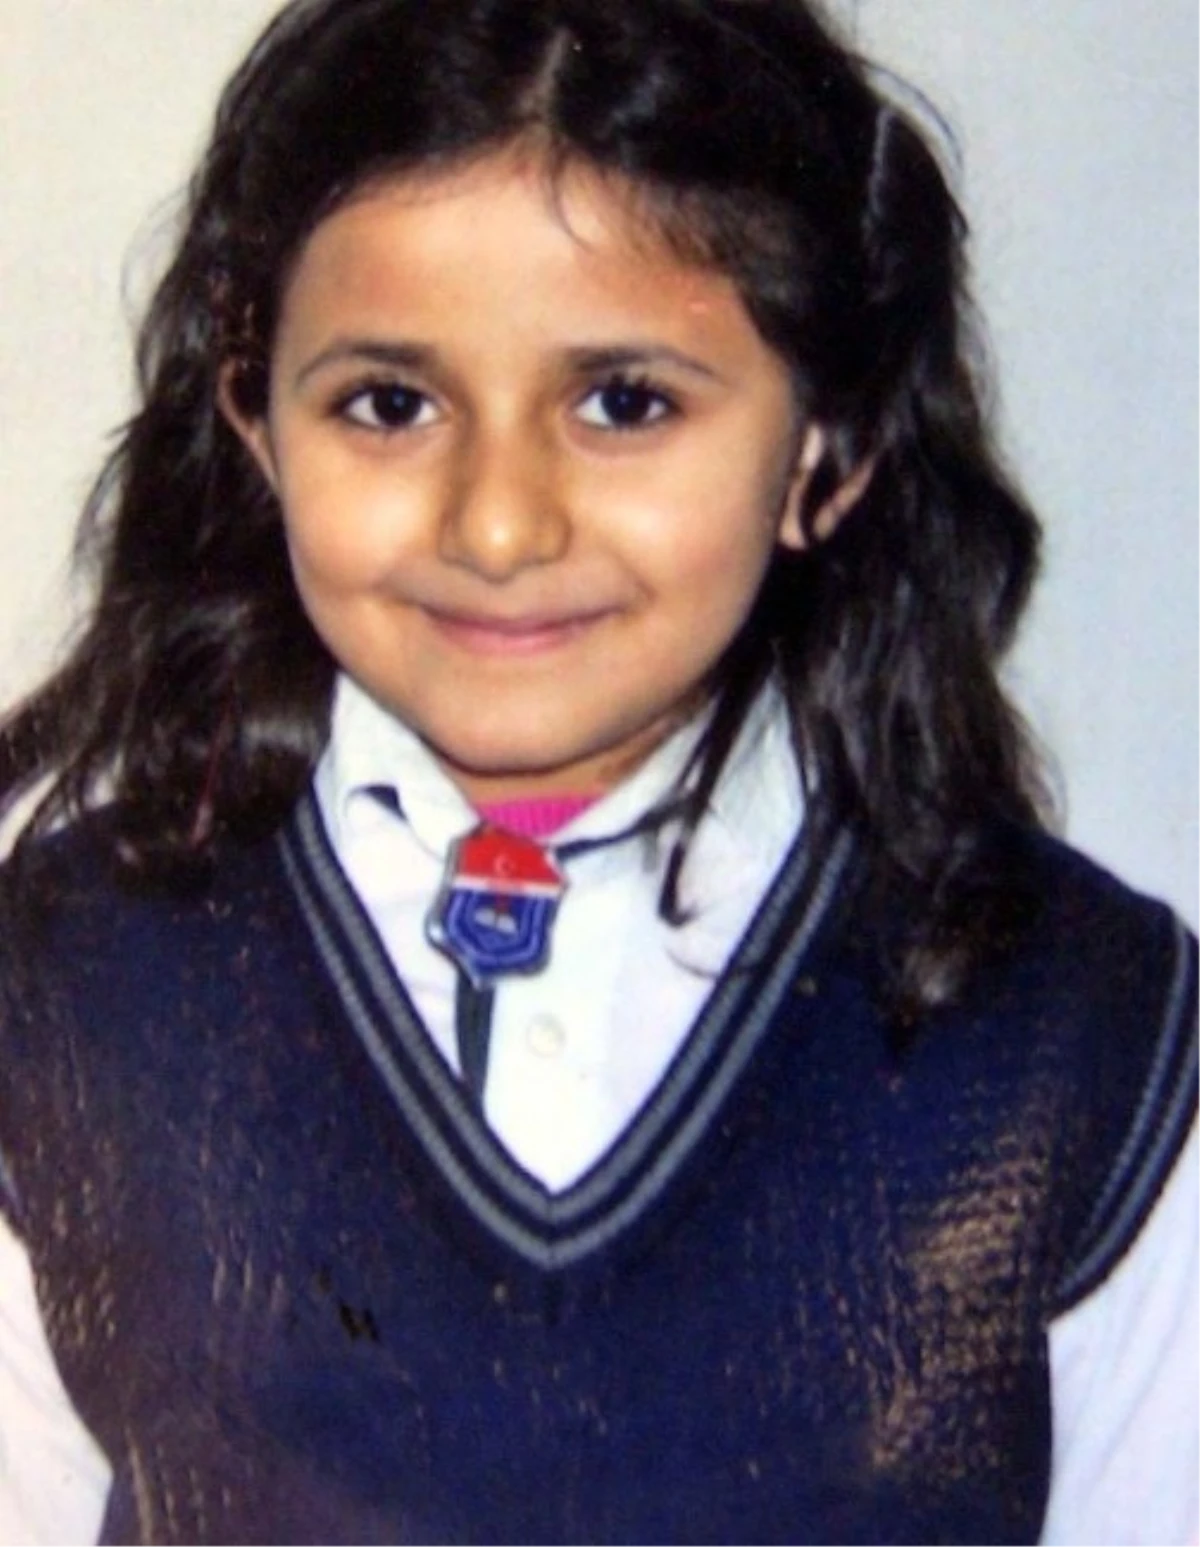 Dövülerek Öldürülen 9 Yaşındaki Nazar Son Yolculuğuna Uğurlandı